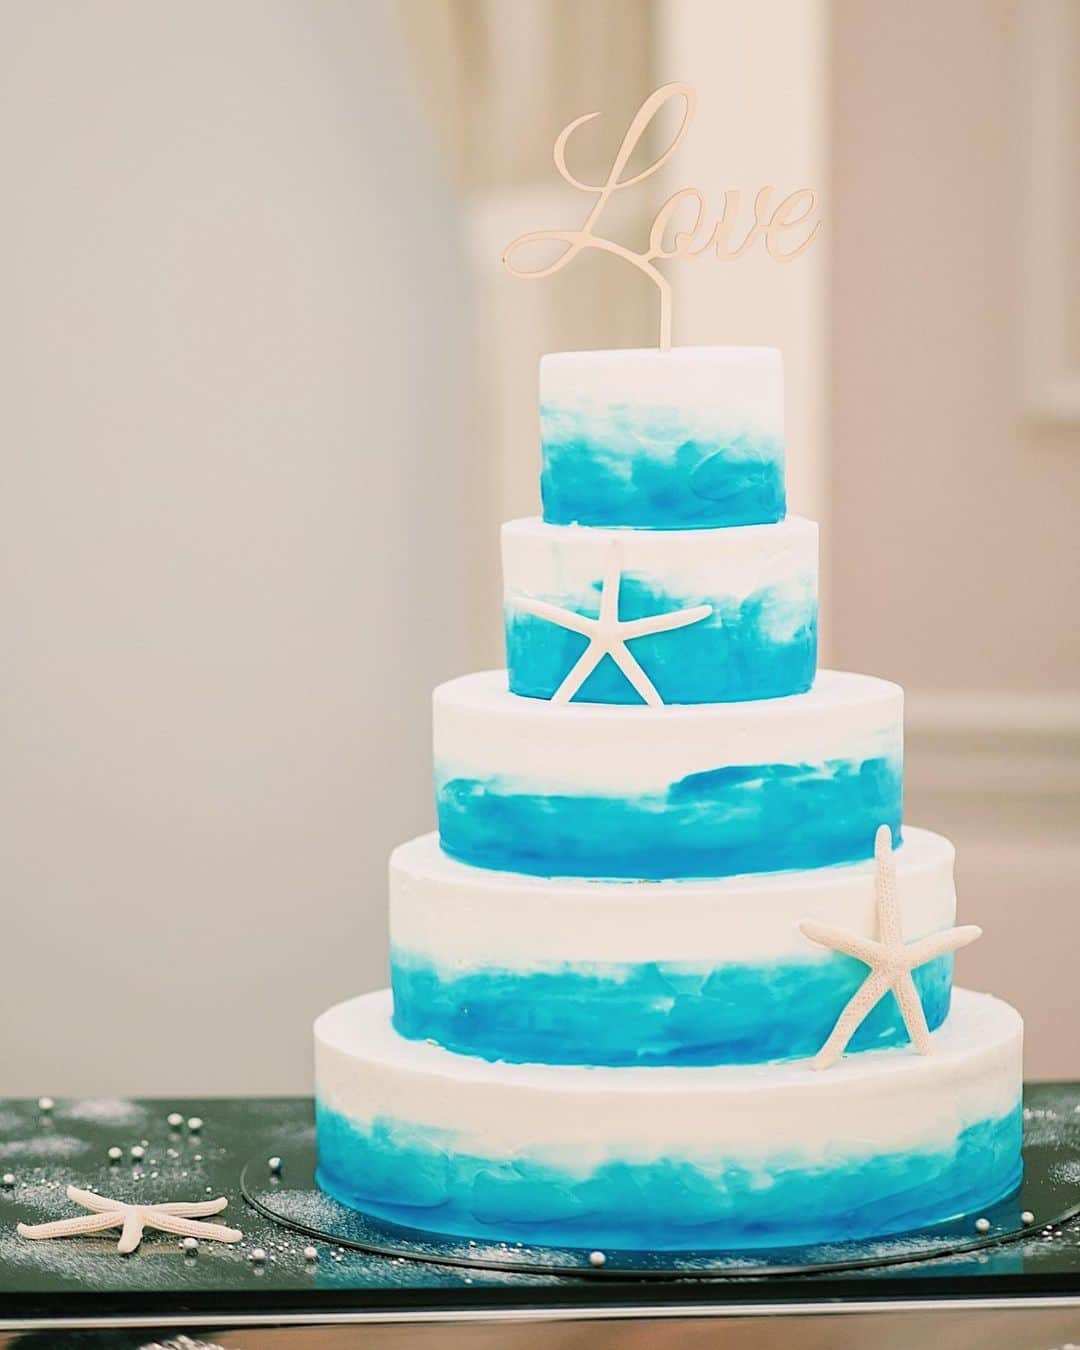 Rihoさんのインスタグラム写真 Rihoinstagram Wedding Cake １番こだわったウェディングケーキ プロポーズされた宮古島の海を イメージして作ってもらいました ケーキの仕上がりわ当日まで分からんけん ドキドキだったけど予想以上で